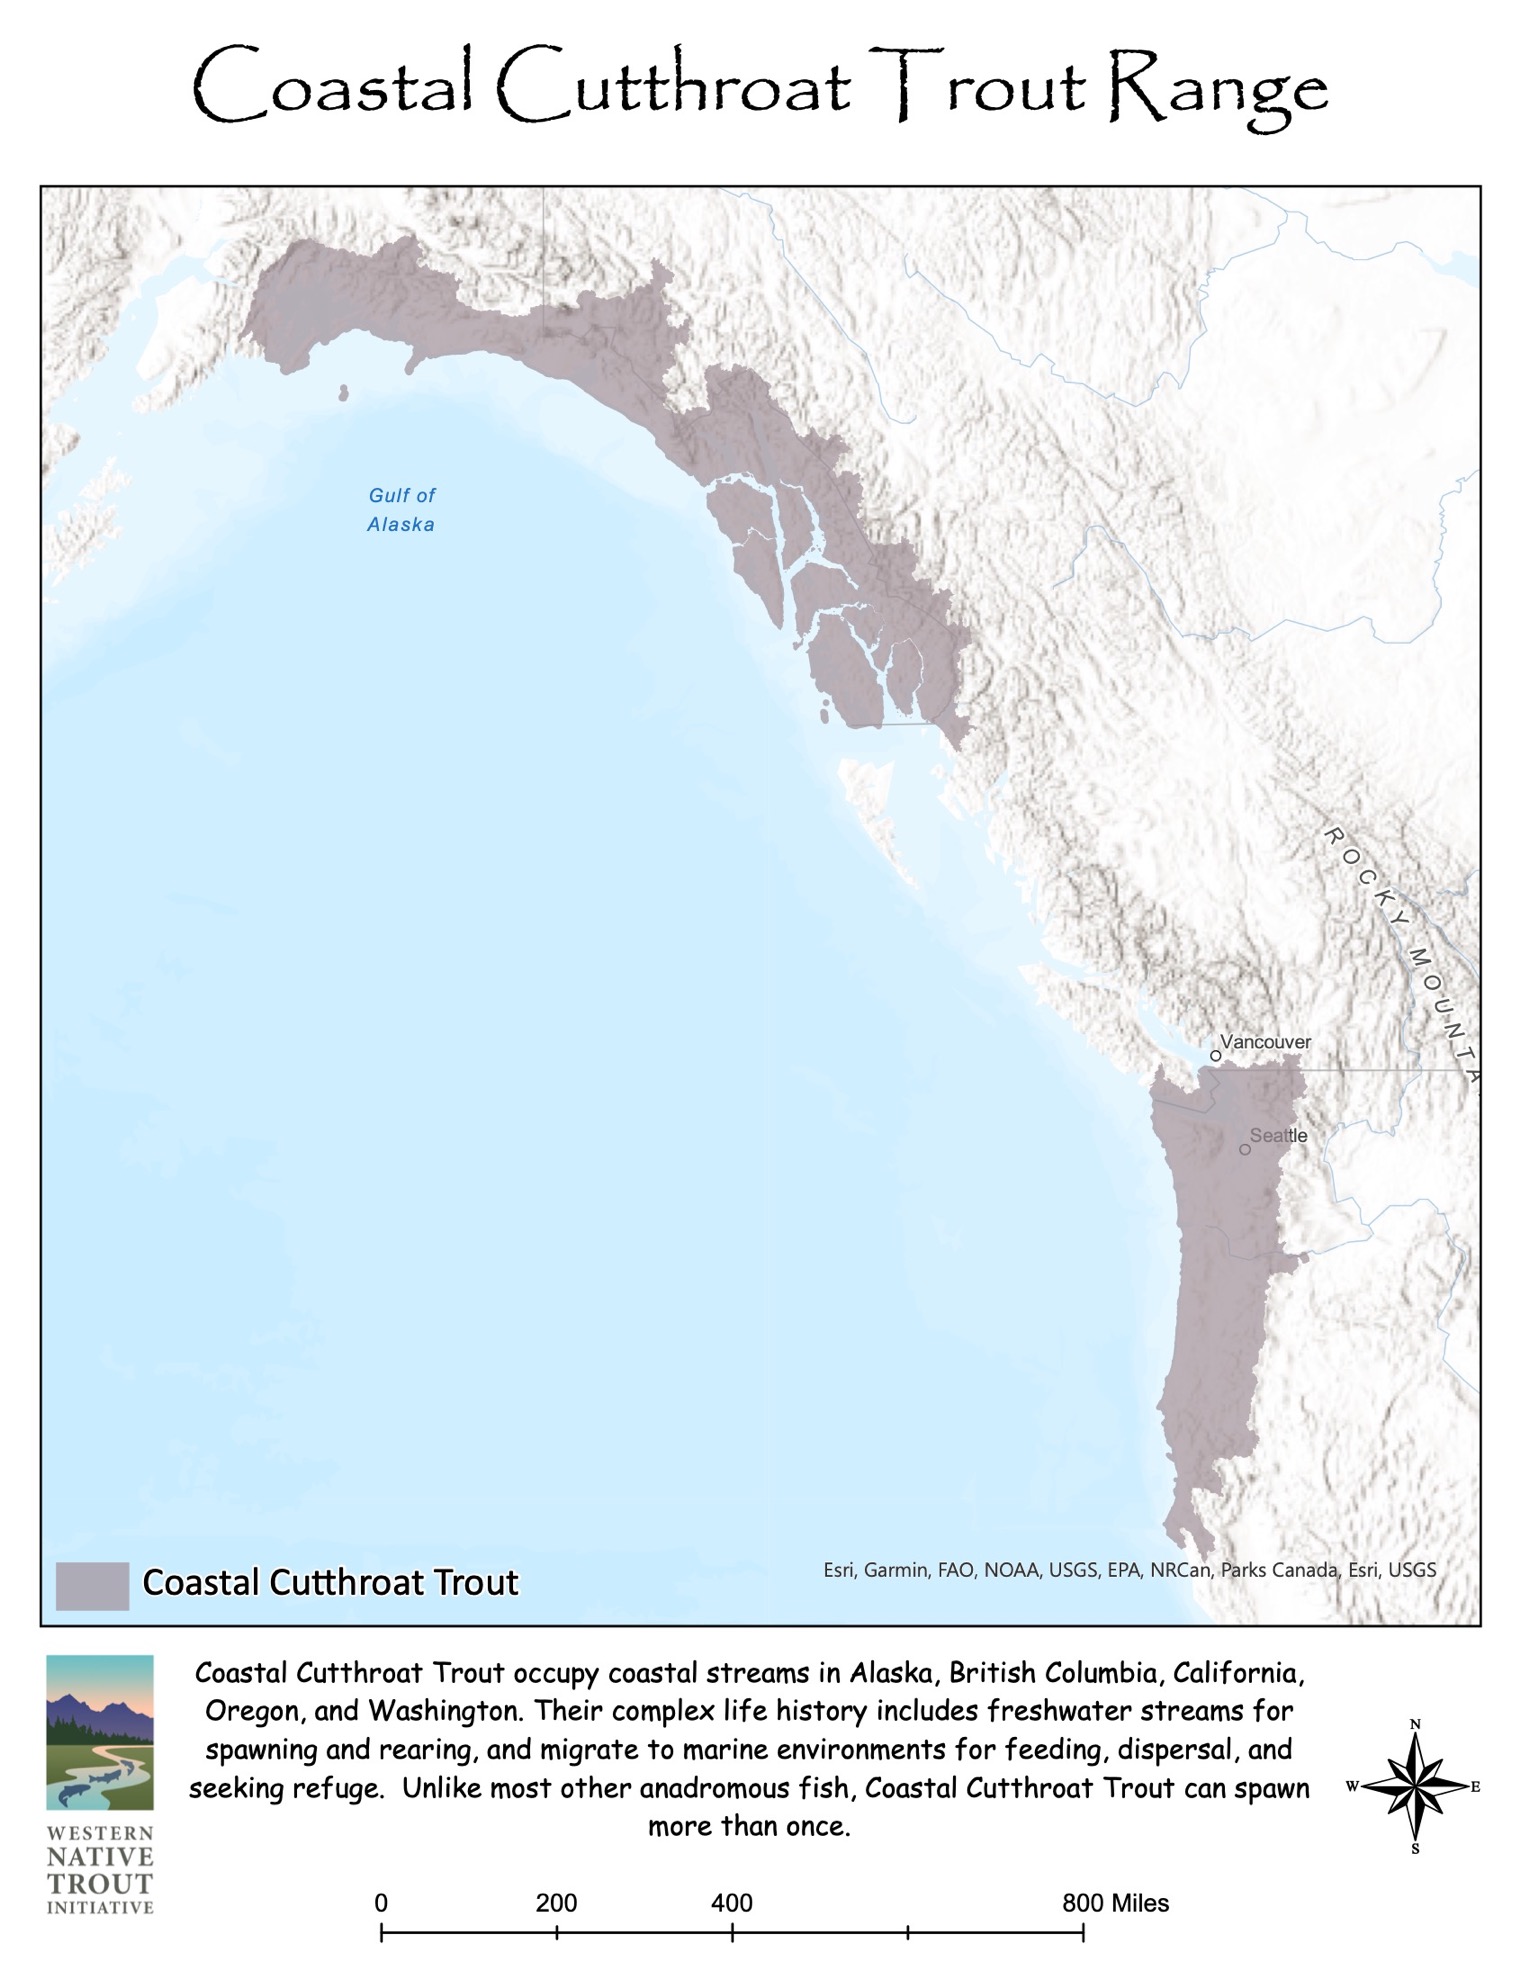 Coastal Cutthroat Trout – Western Native Trout Initiative